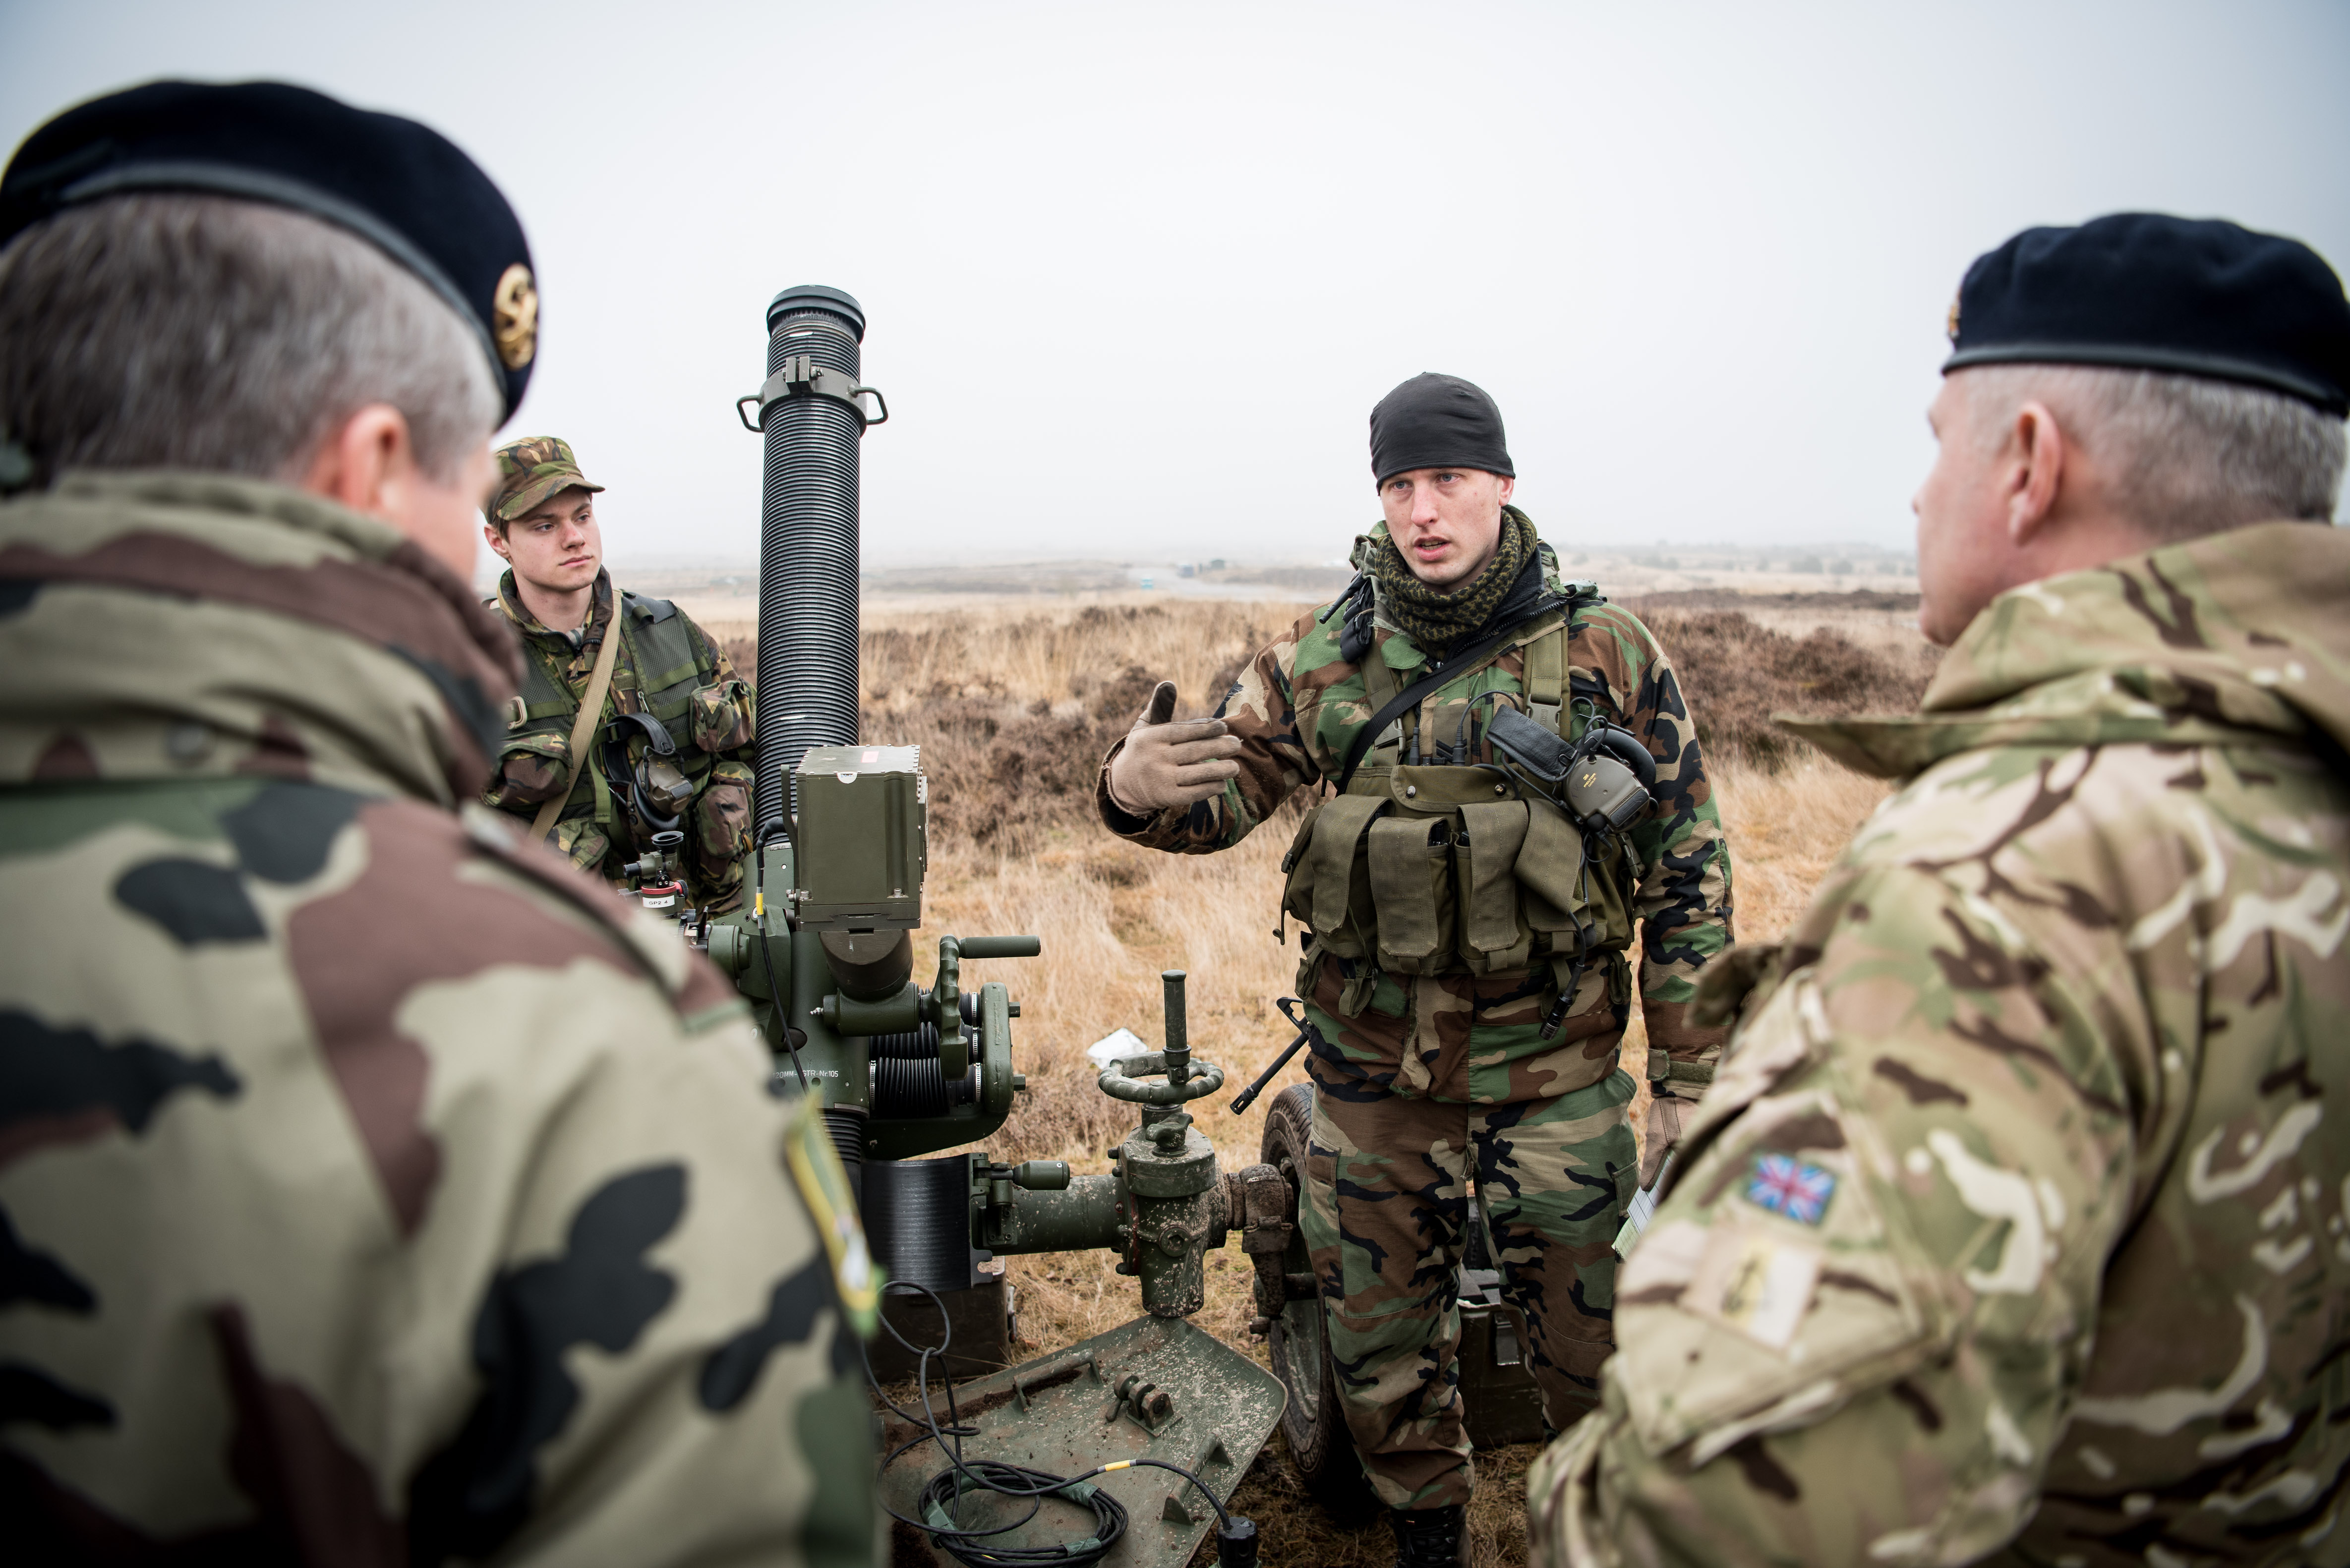 De defensie attachees van Groot-Brittannië en Frankrijk bezoeken begini 2017 het Vuursteuncommando in 't Harde. Bron: Phoenix OOCL / Flickr